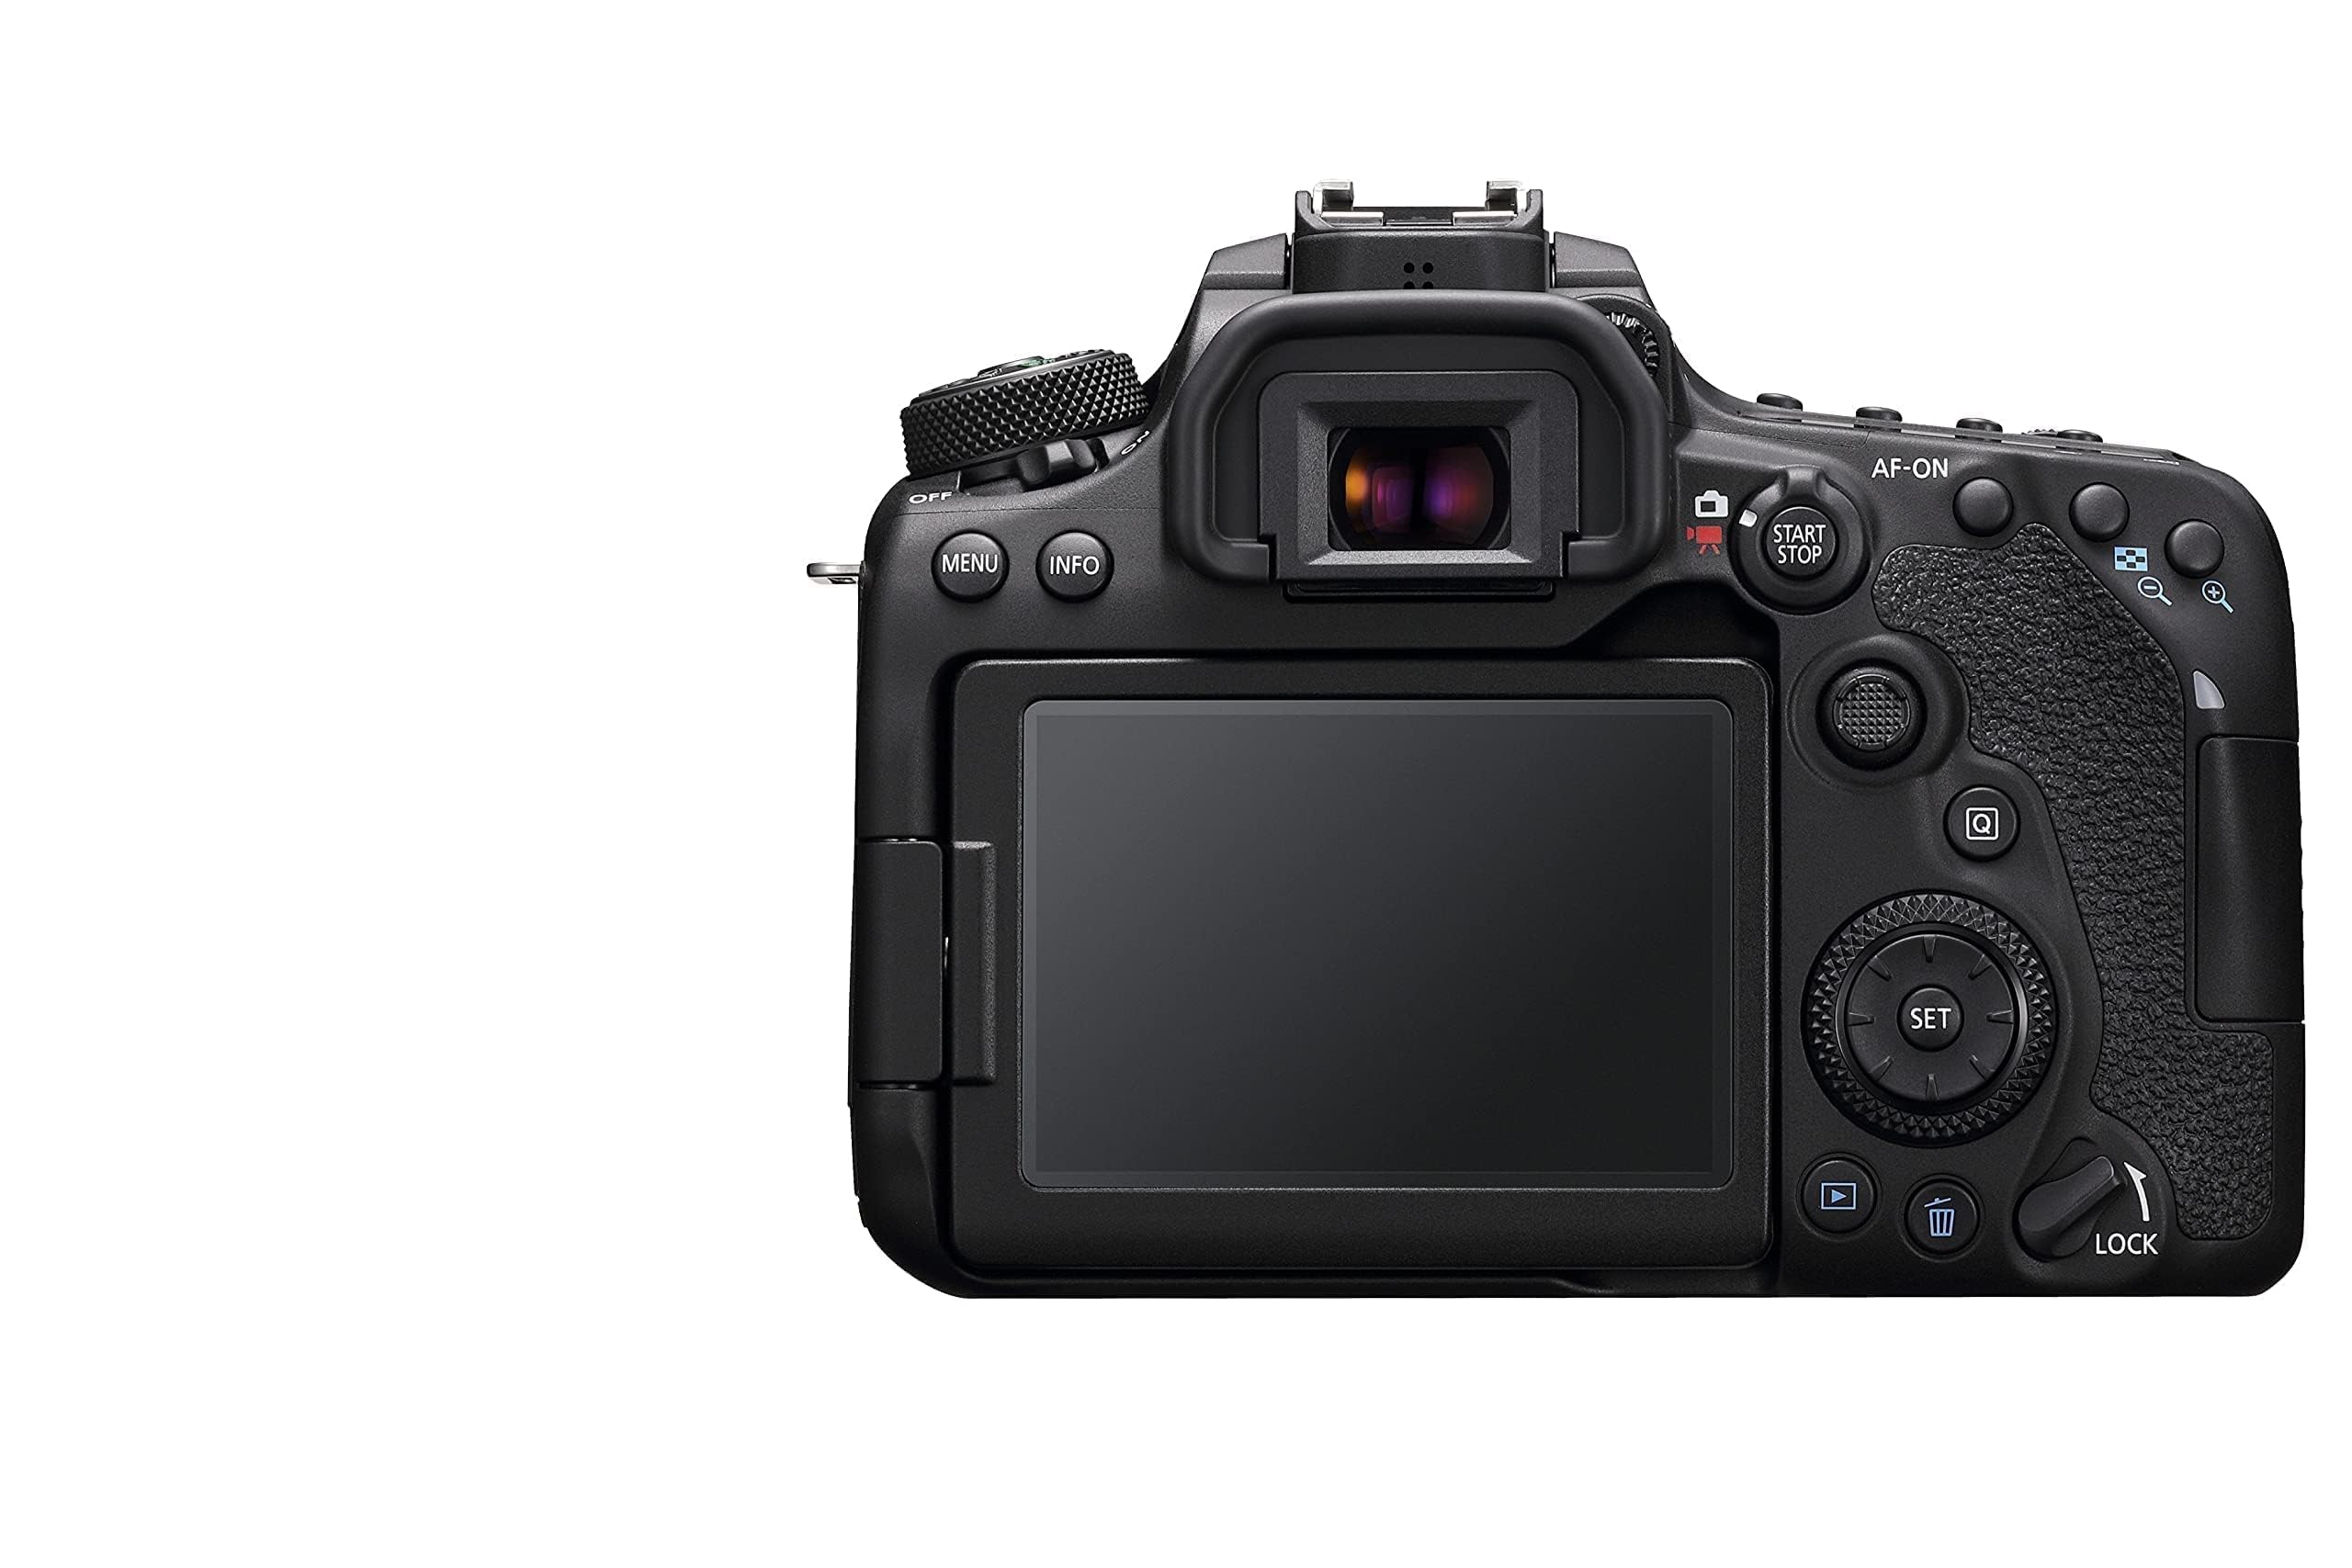 Canon 3616C016 90D Digital SLR Camera with 18-135 IS USM Lens - Black,